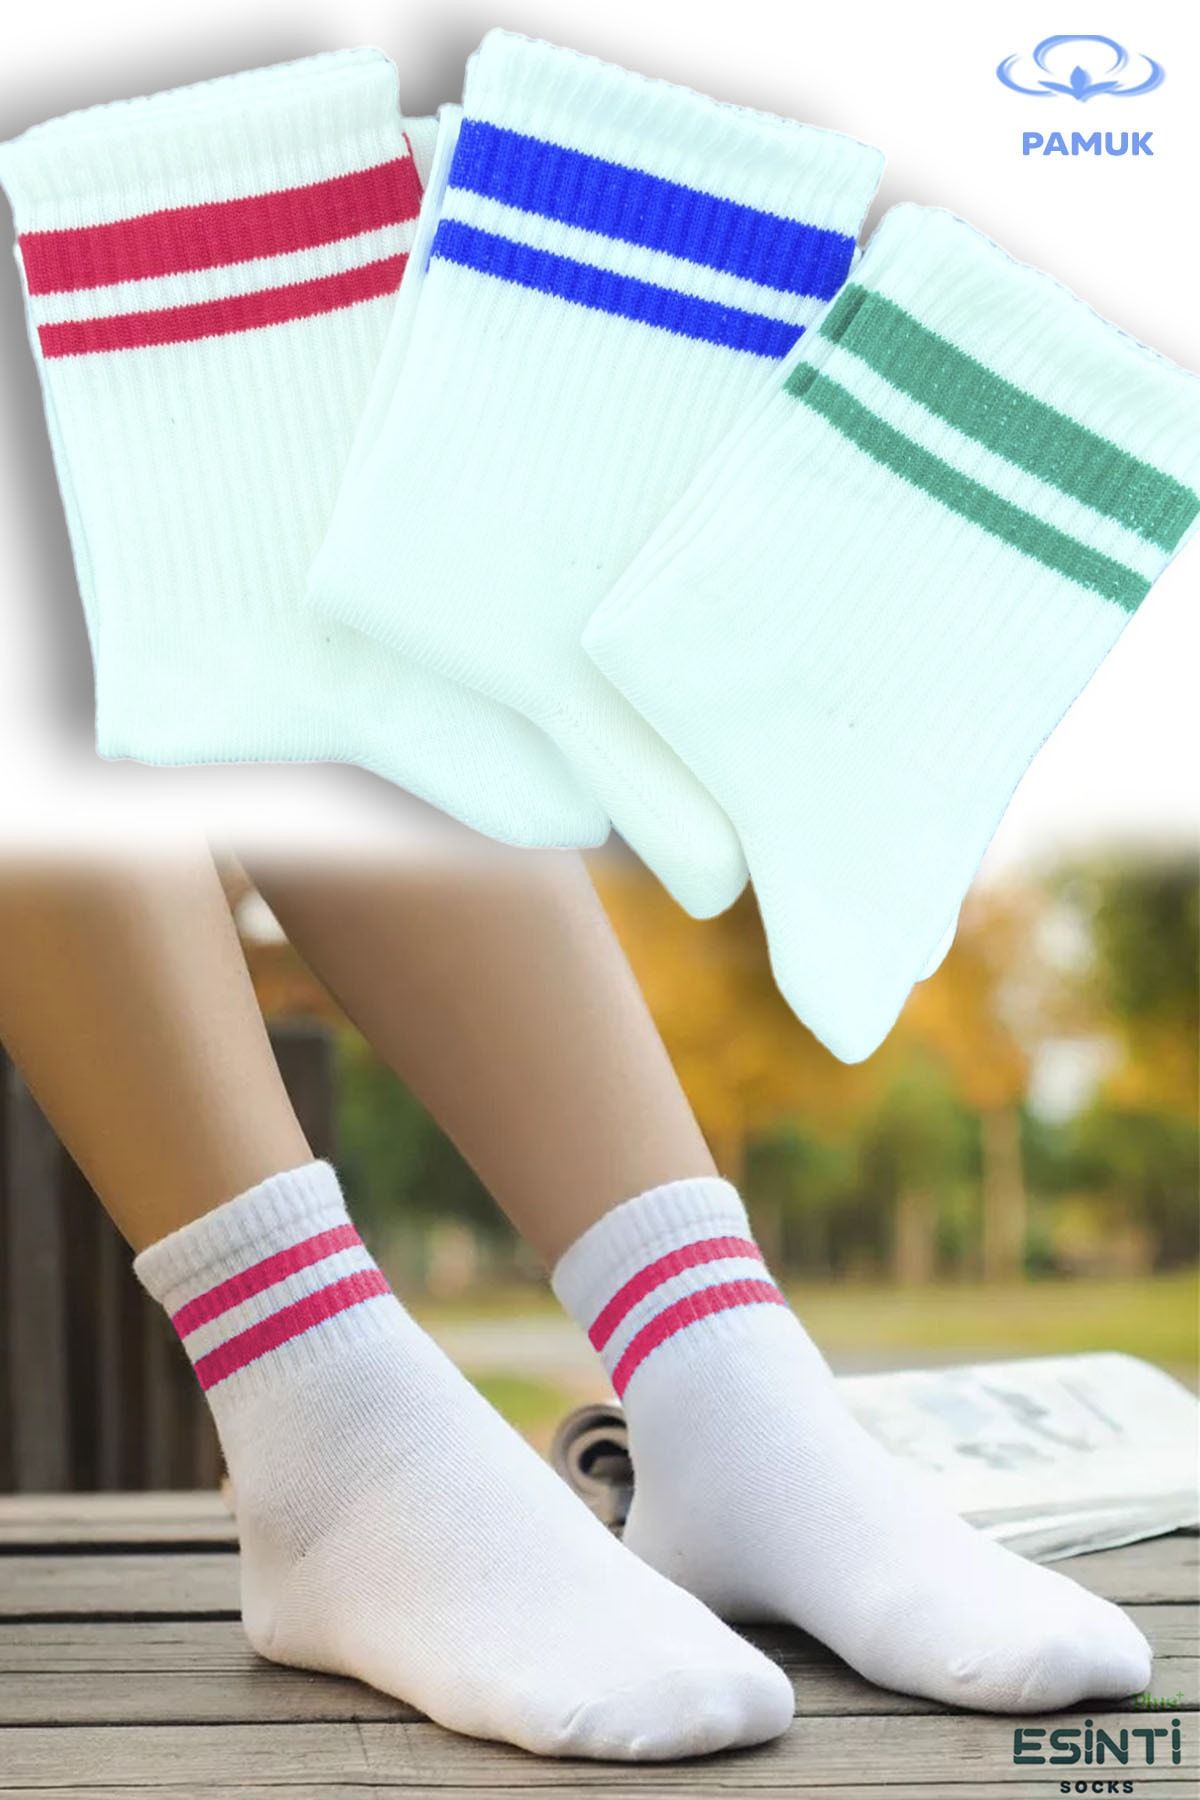 Esinti Erkek Çorap Kadın Çorap Uzun Spor Çorapları Desenli Soket Çorap Renkli Çorap 3 Adet çorap-508